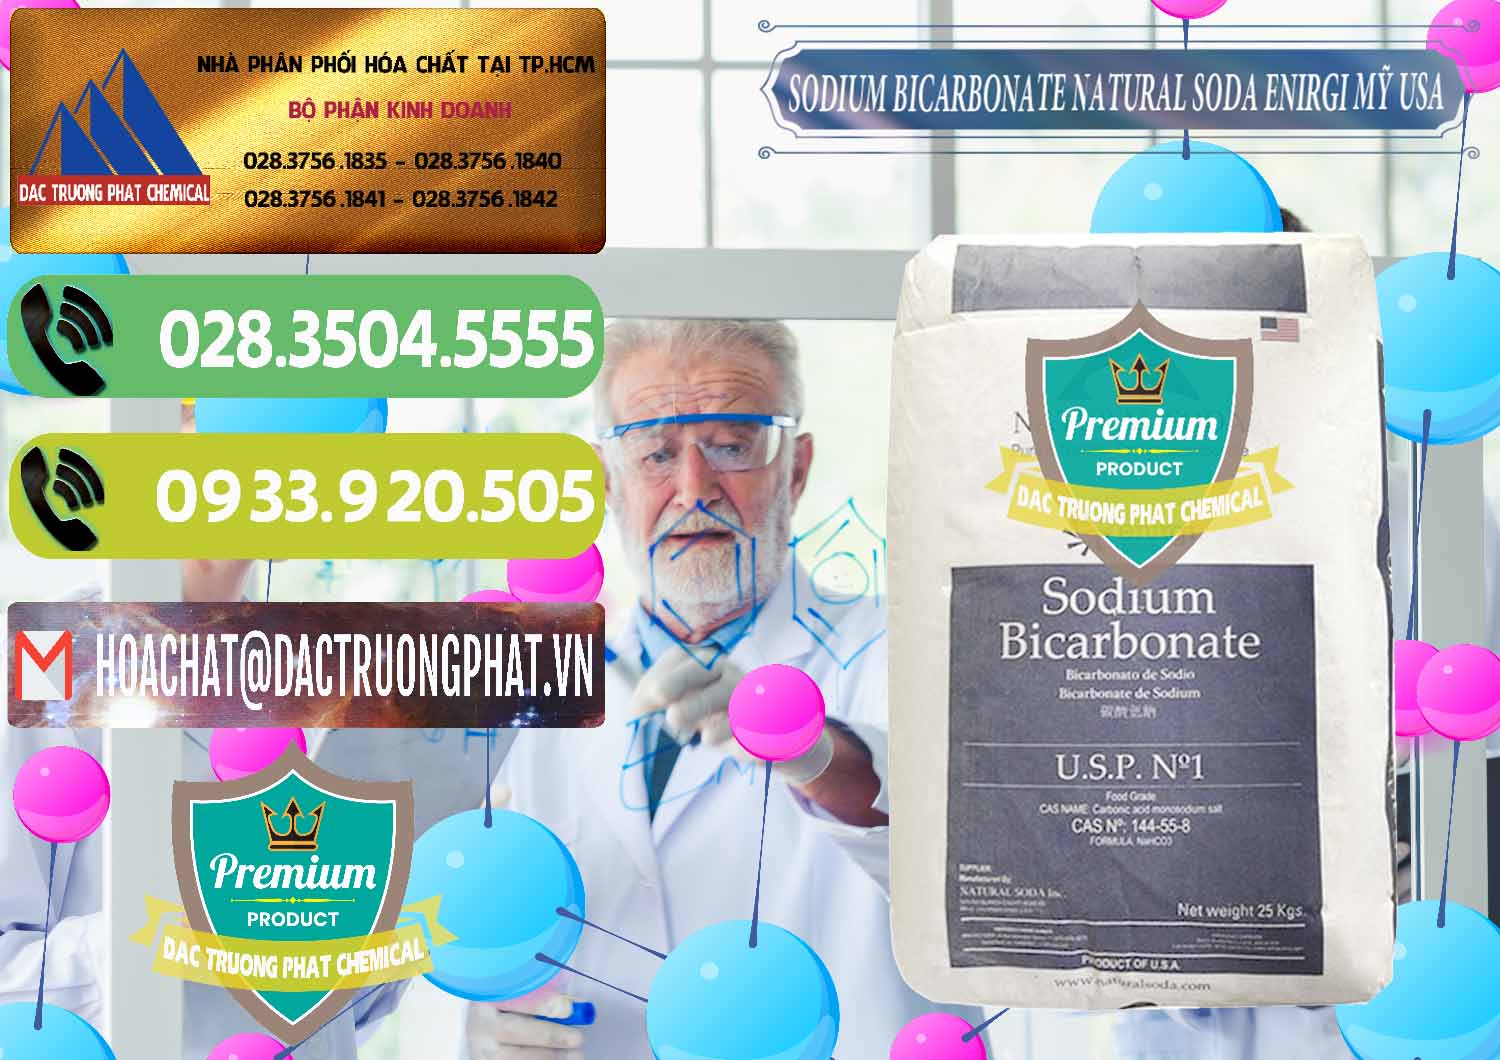 Nơi kinh doanh ( bán ) Sodium Bicarbonate – Bicar NaHCO3 Food Grade Natural Soda Enirgi Mỹ USA - 0257 - Công ty chuyên phân phối - cung ứng hóa chất tại TP.HCM - hoachatmientay.vn